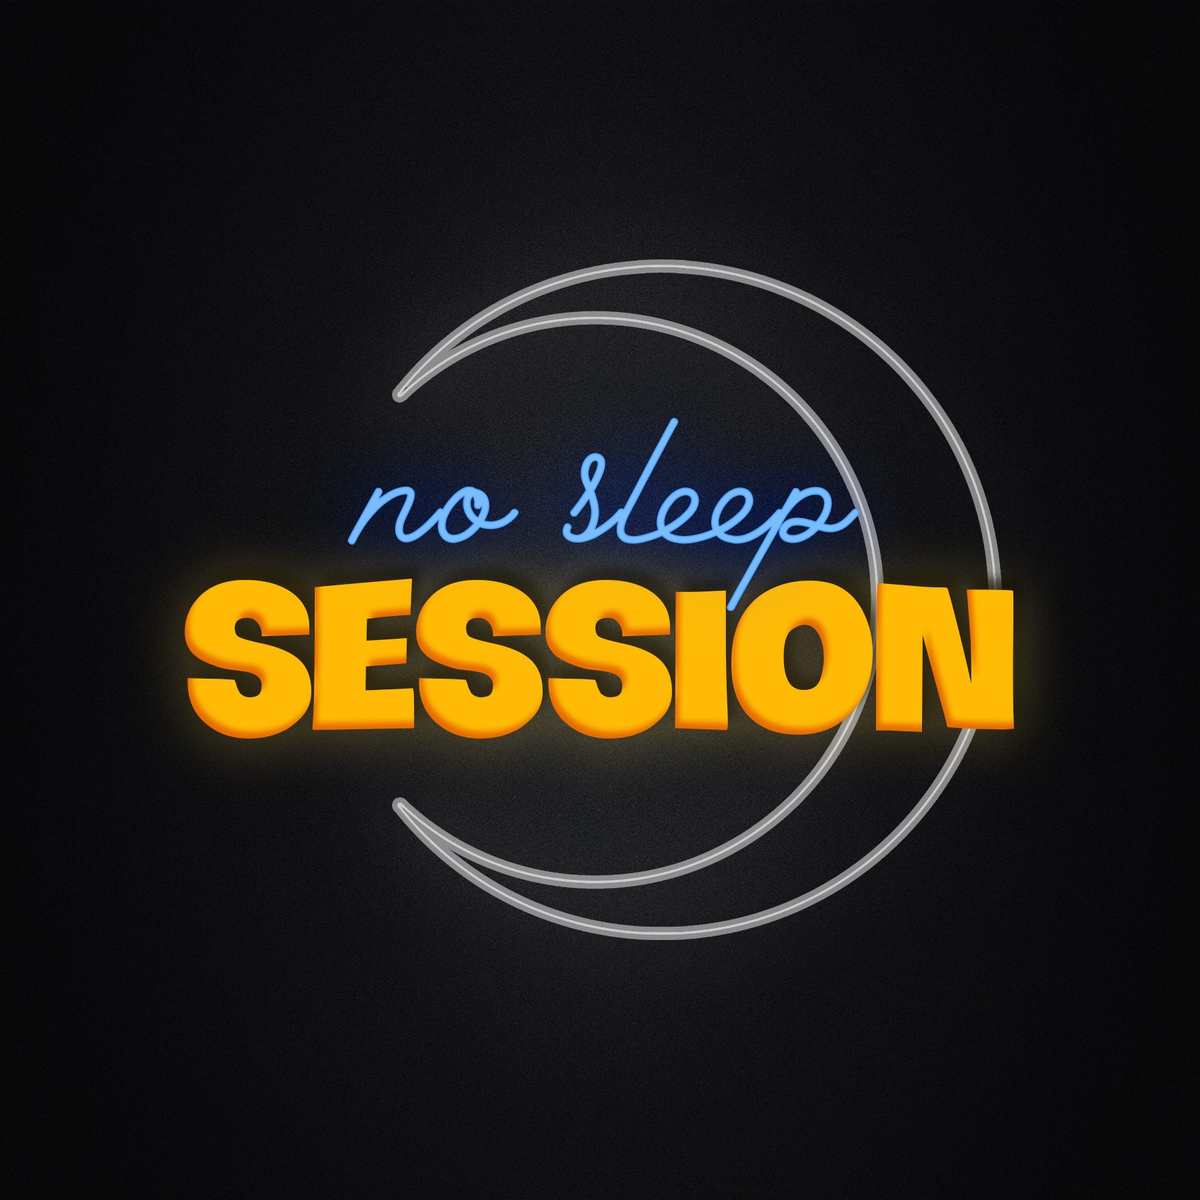 No Sleep Session - Đừng ngủ để tranh thủ cày nhạc nhé.